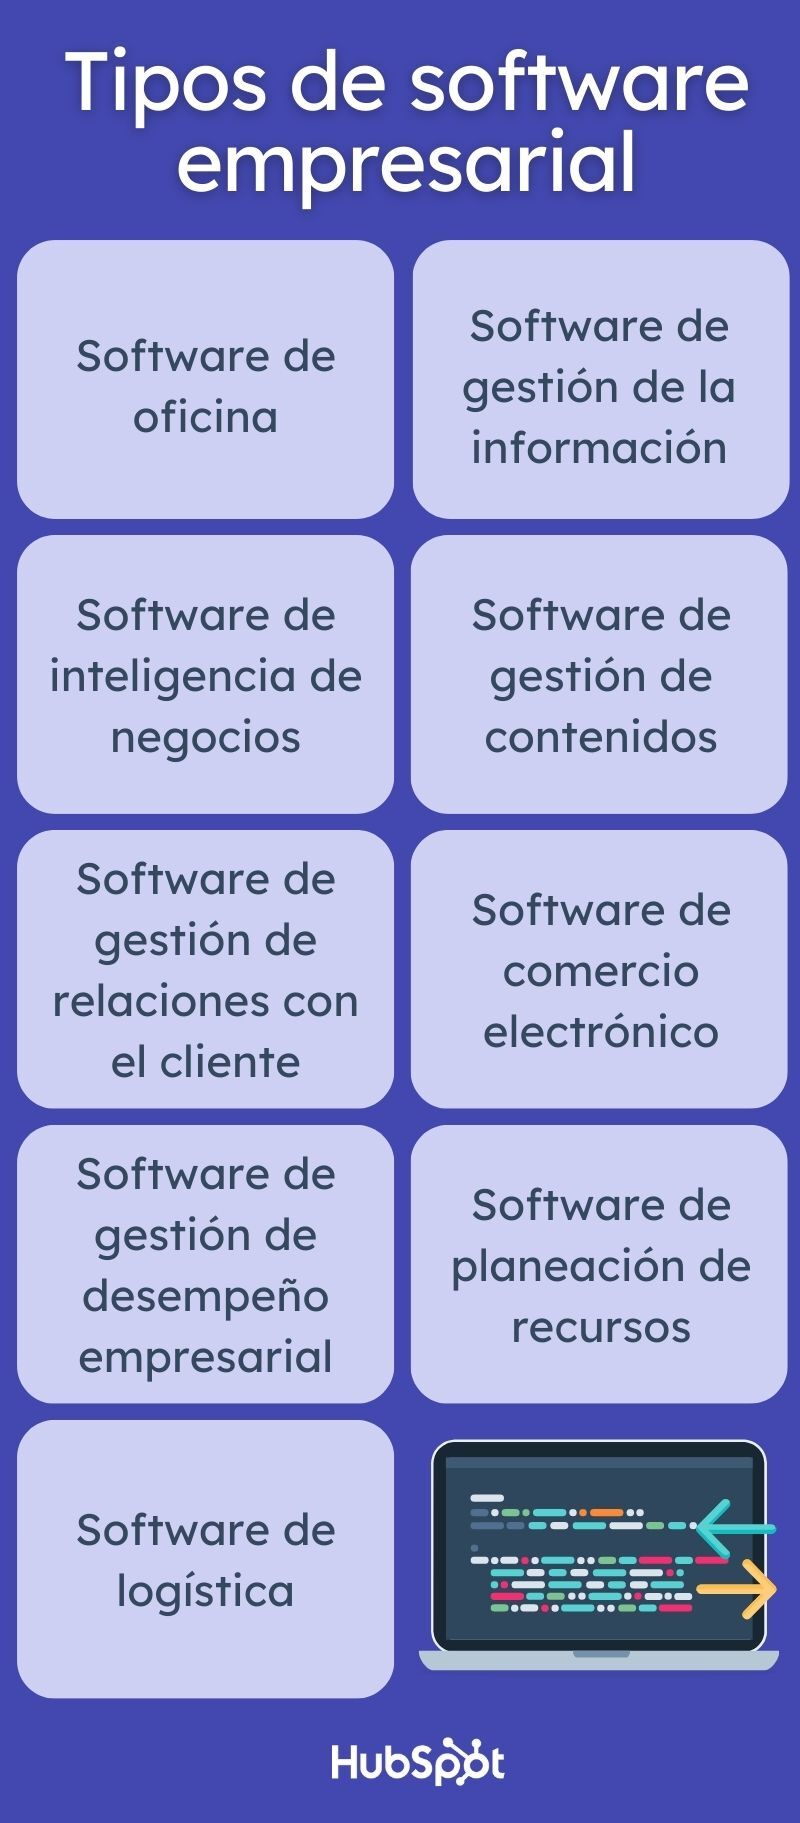 Infografía sobre los tipos de software empresarial